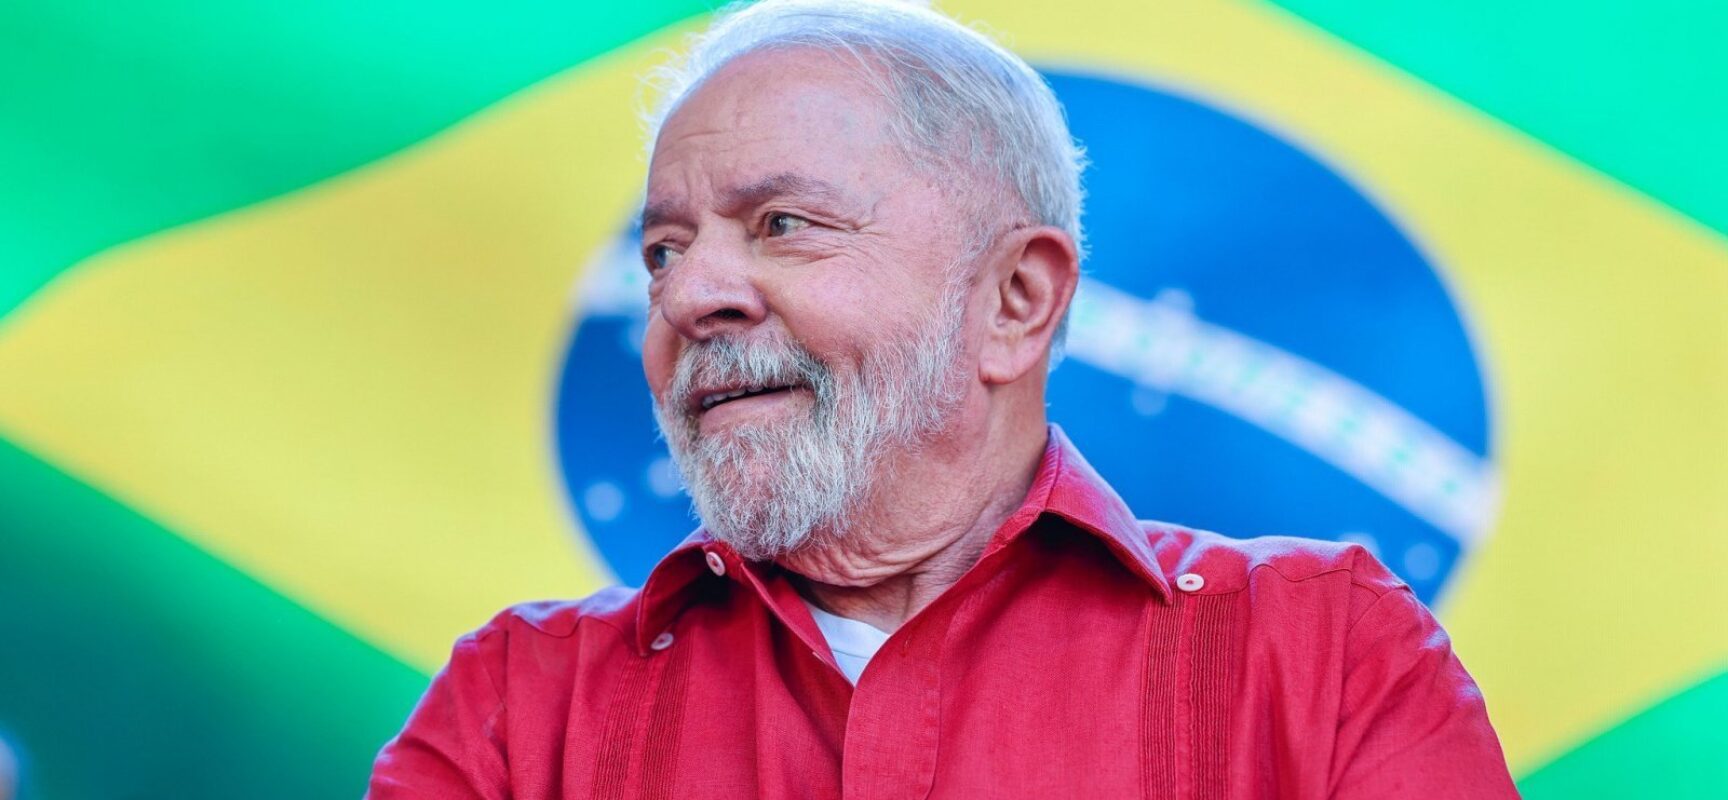 Com maior bloco partidário, Lula deve ter mais tempo de propaganda eleitoral